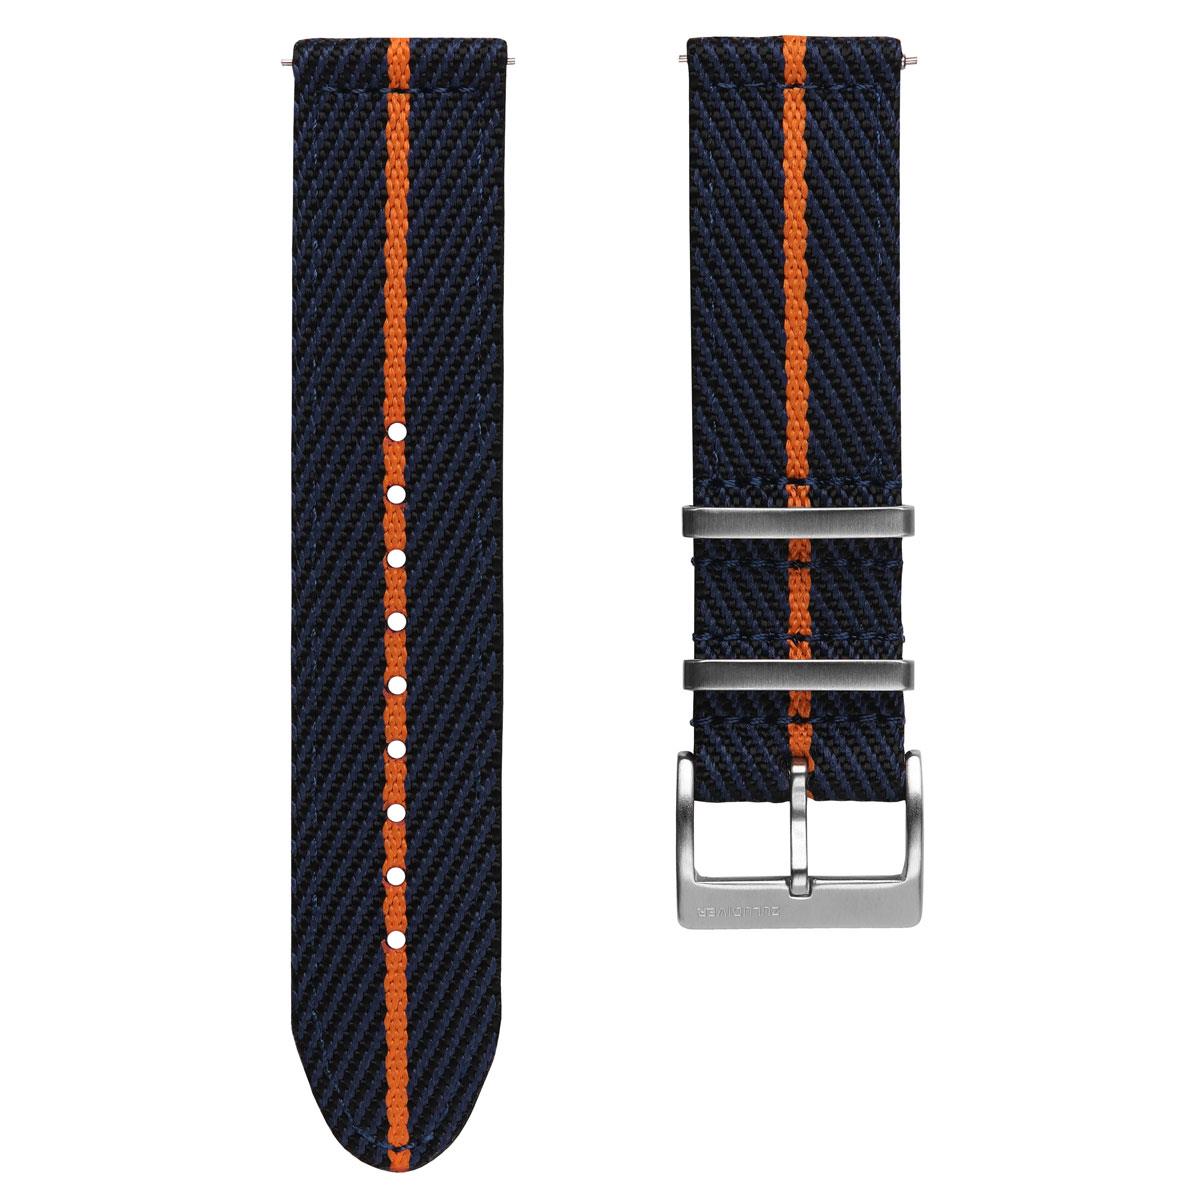 ZULUDIVER Seasalter Military Nylon Watch Strap - Blue/Orange